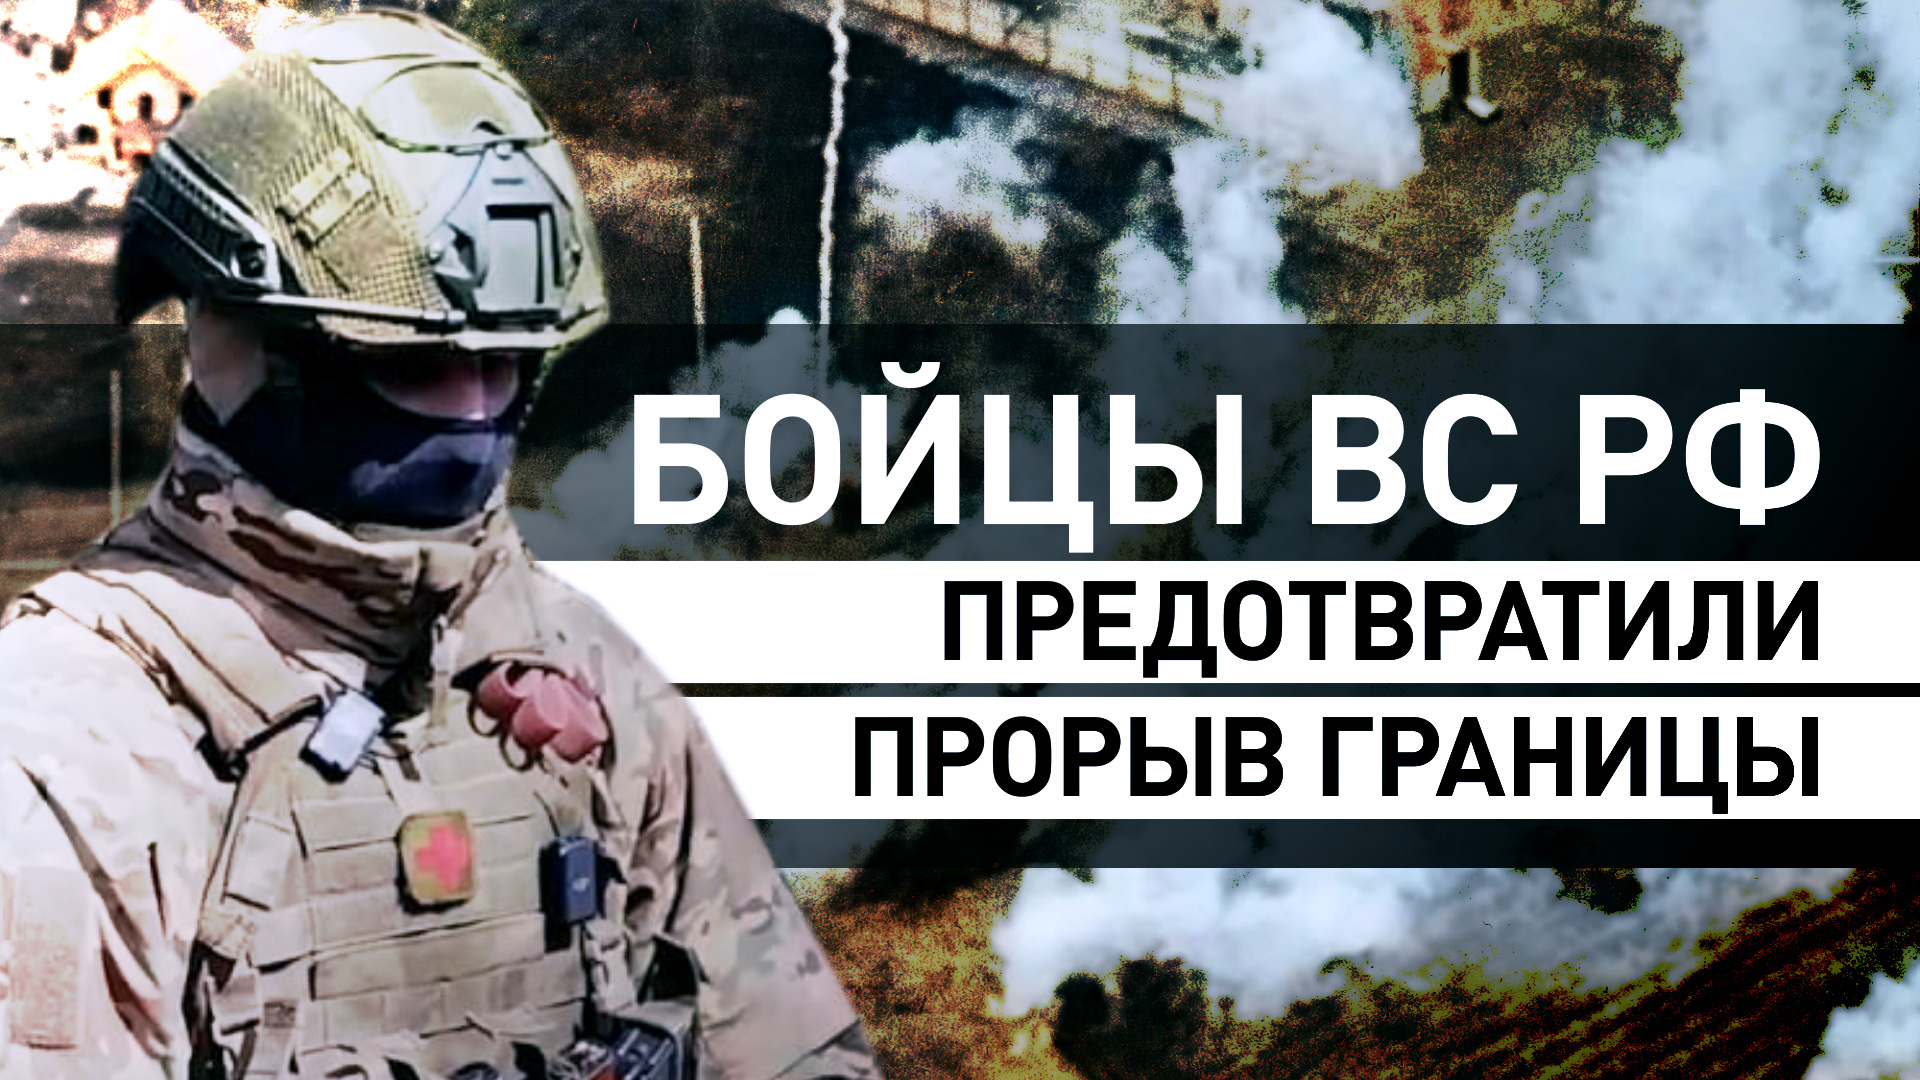 «Принял командование на себя»: начальник медпункта спецназа предотвратил прорыв границы России